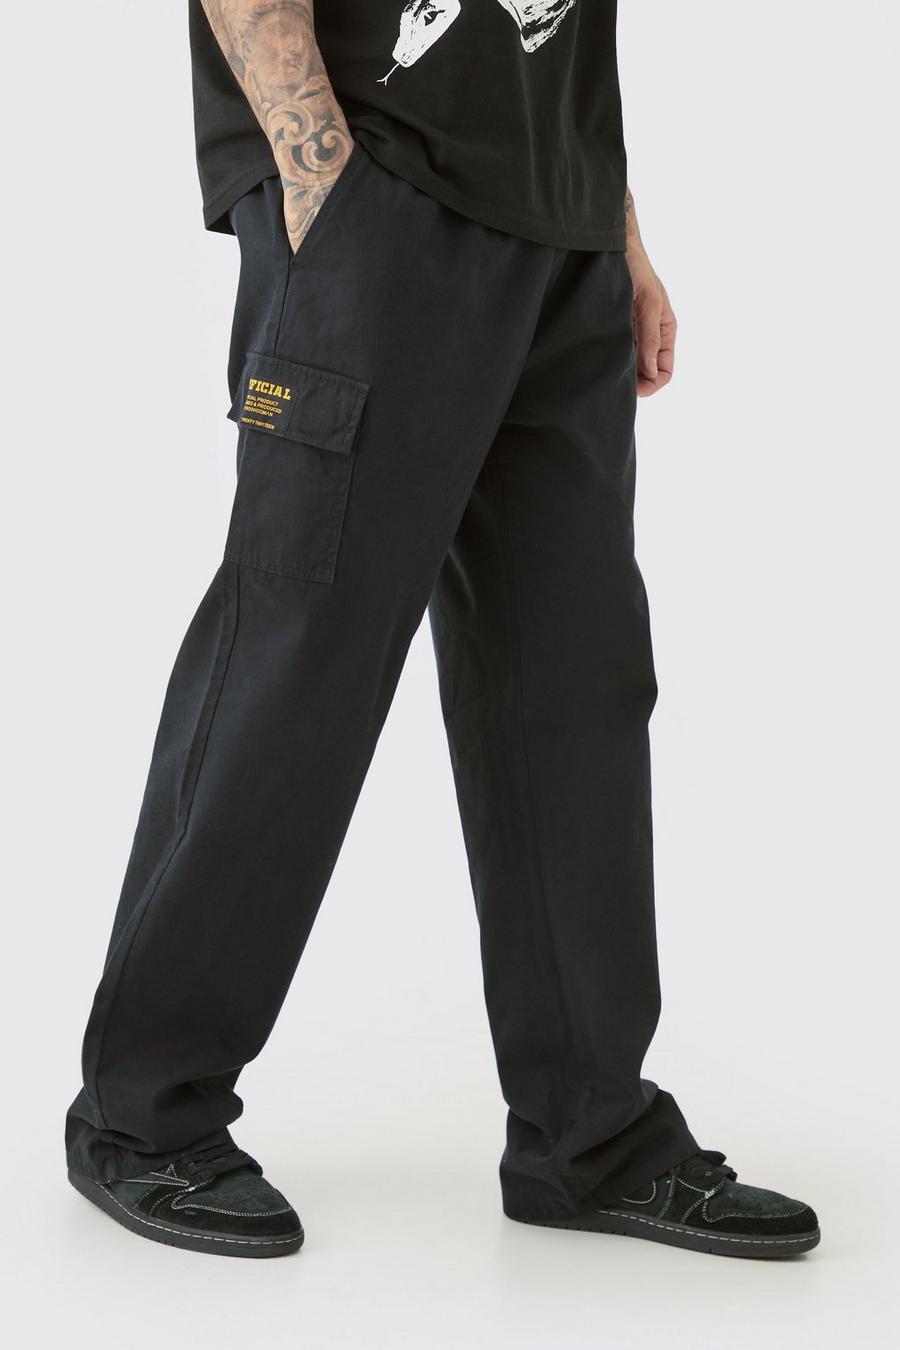 Pantaloni Cargo Tall rilassati in twill con vita elasticizzata e etichetta Cargo, Black